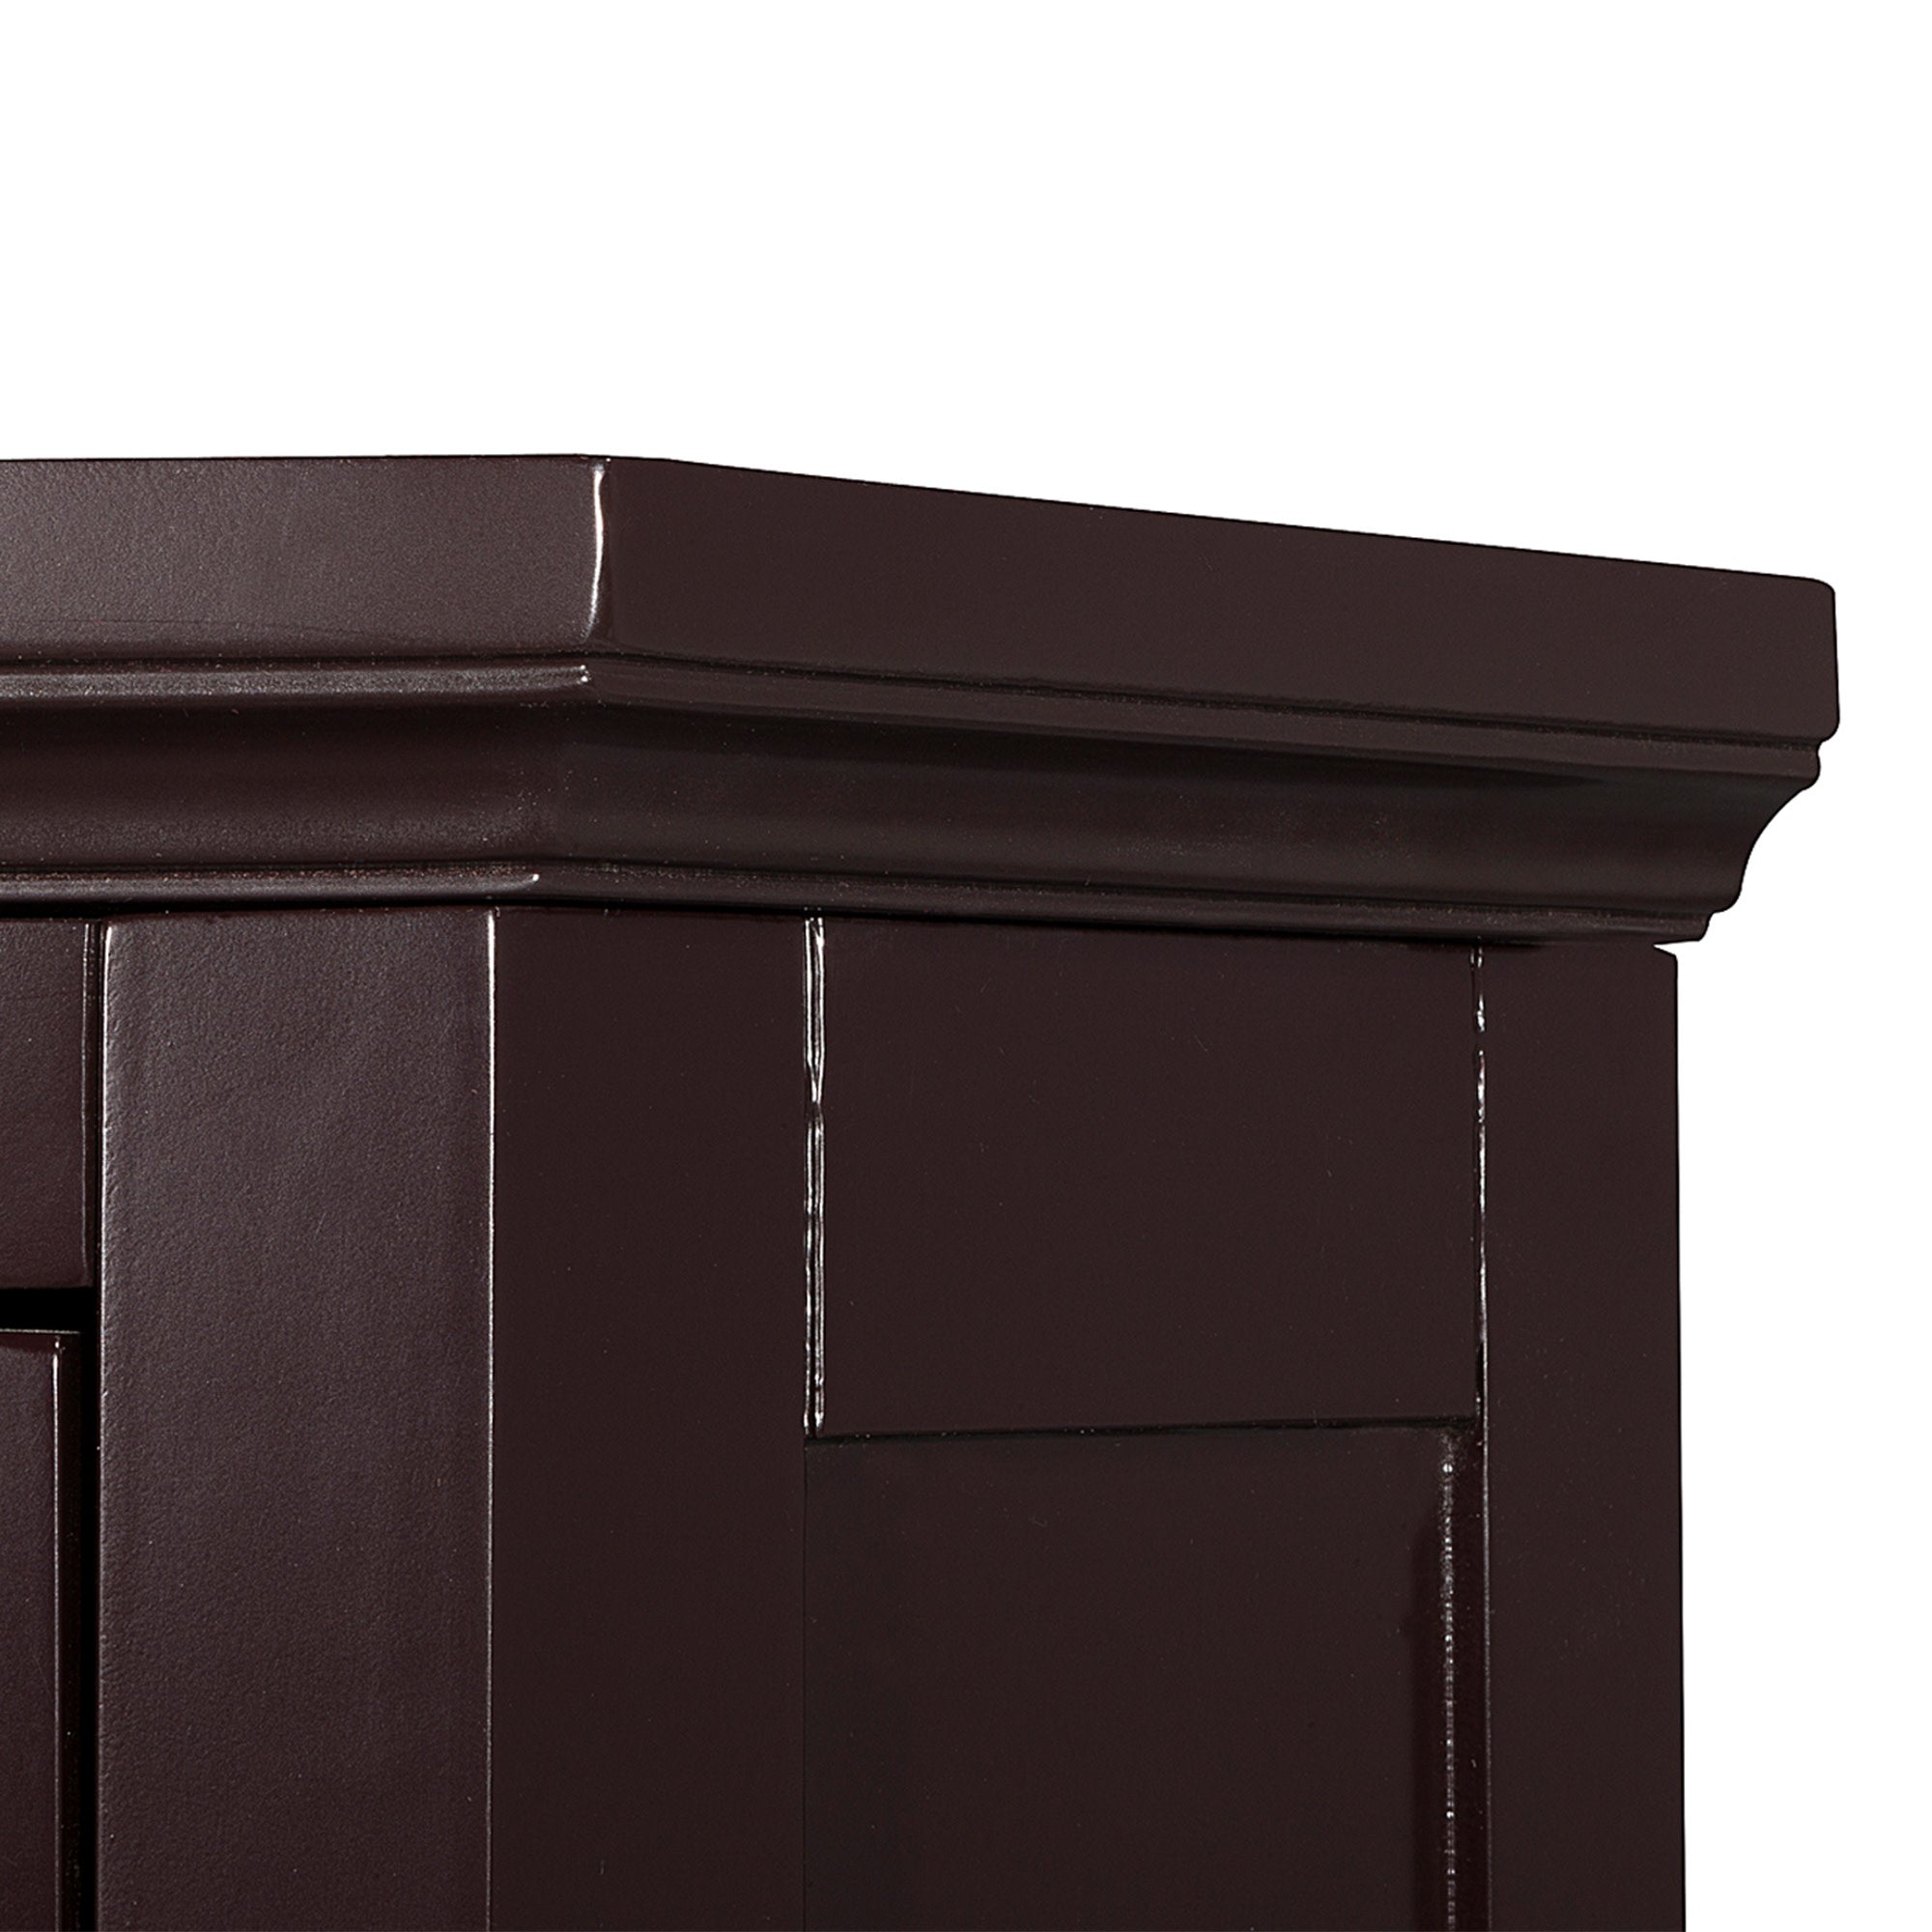 Teamson Home Glancy Wooden Corner Floor Cabinet with Shutter Door, Dark Brown